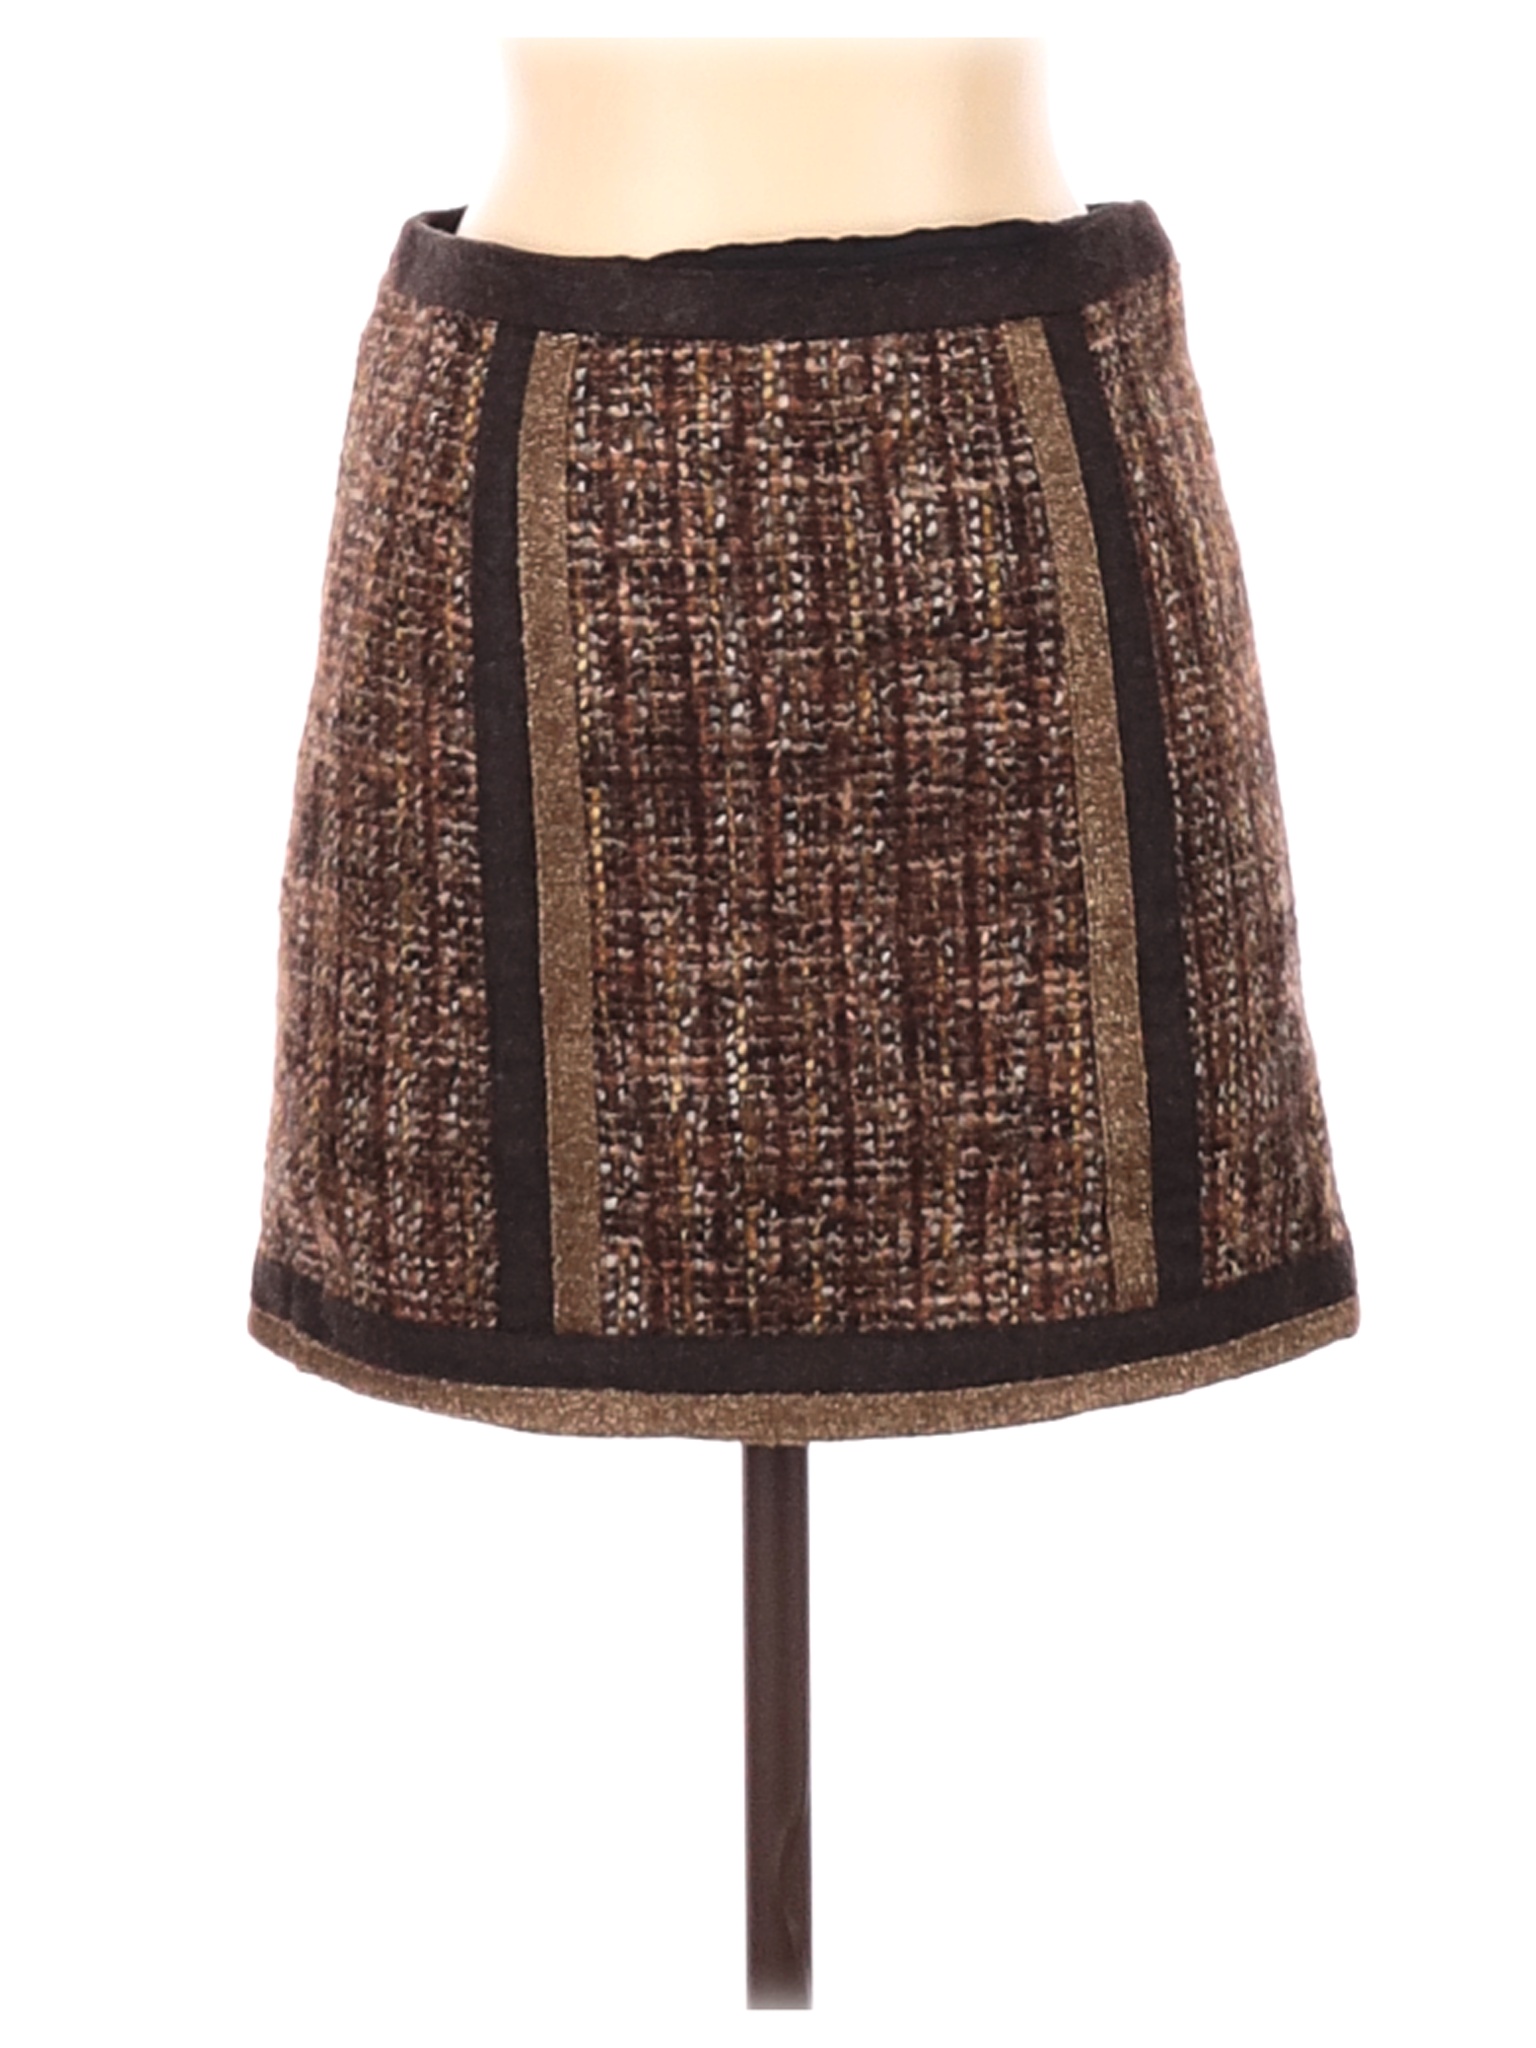 NANETTE Nanette Lepore Women Brown Casual Skirt 0 | eBay